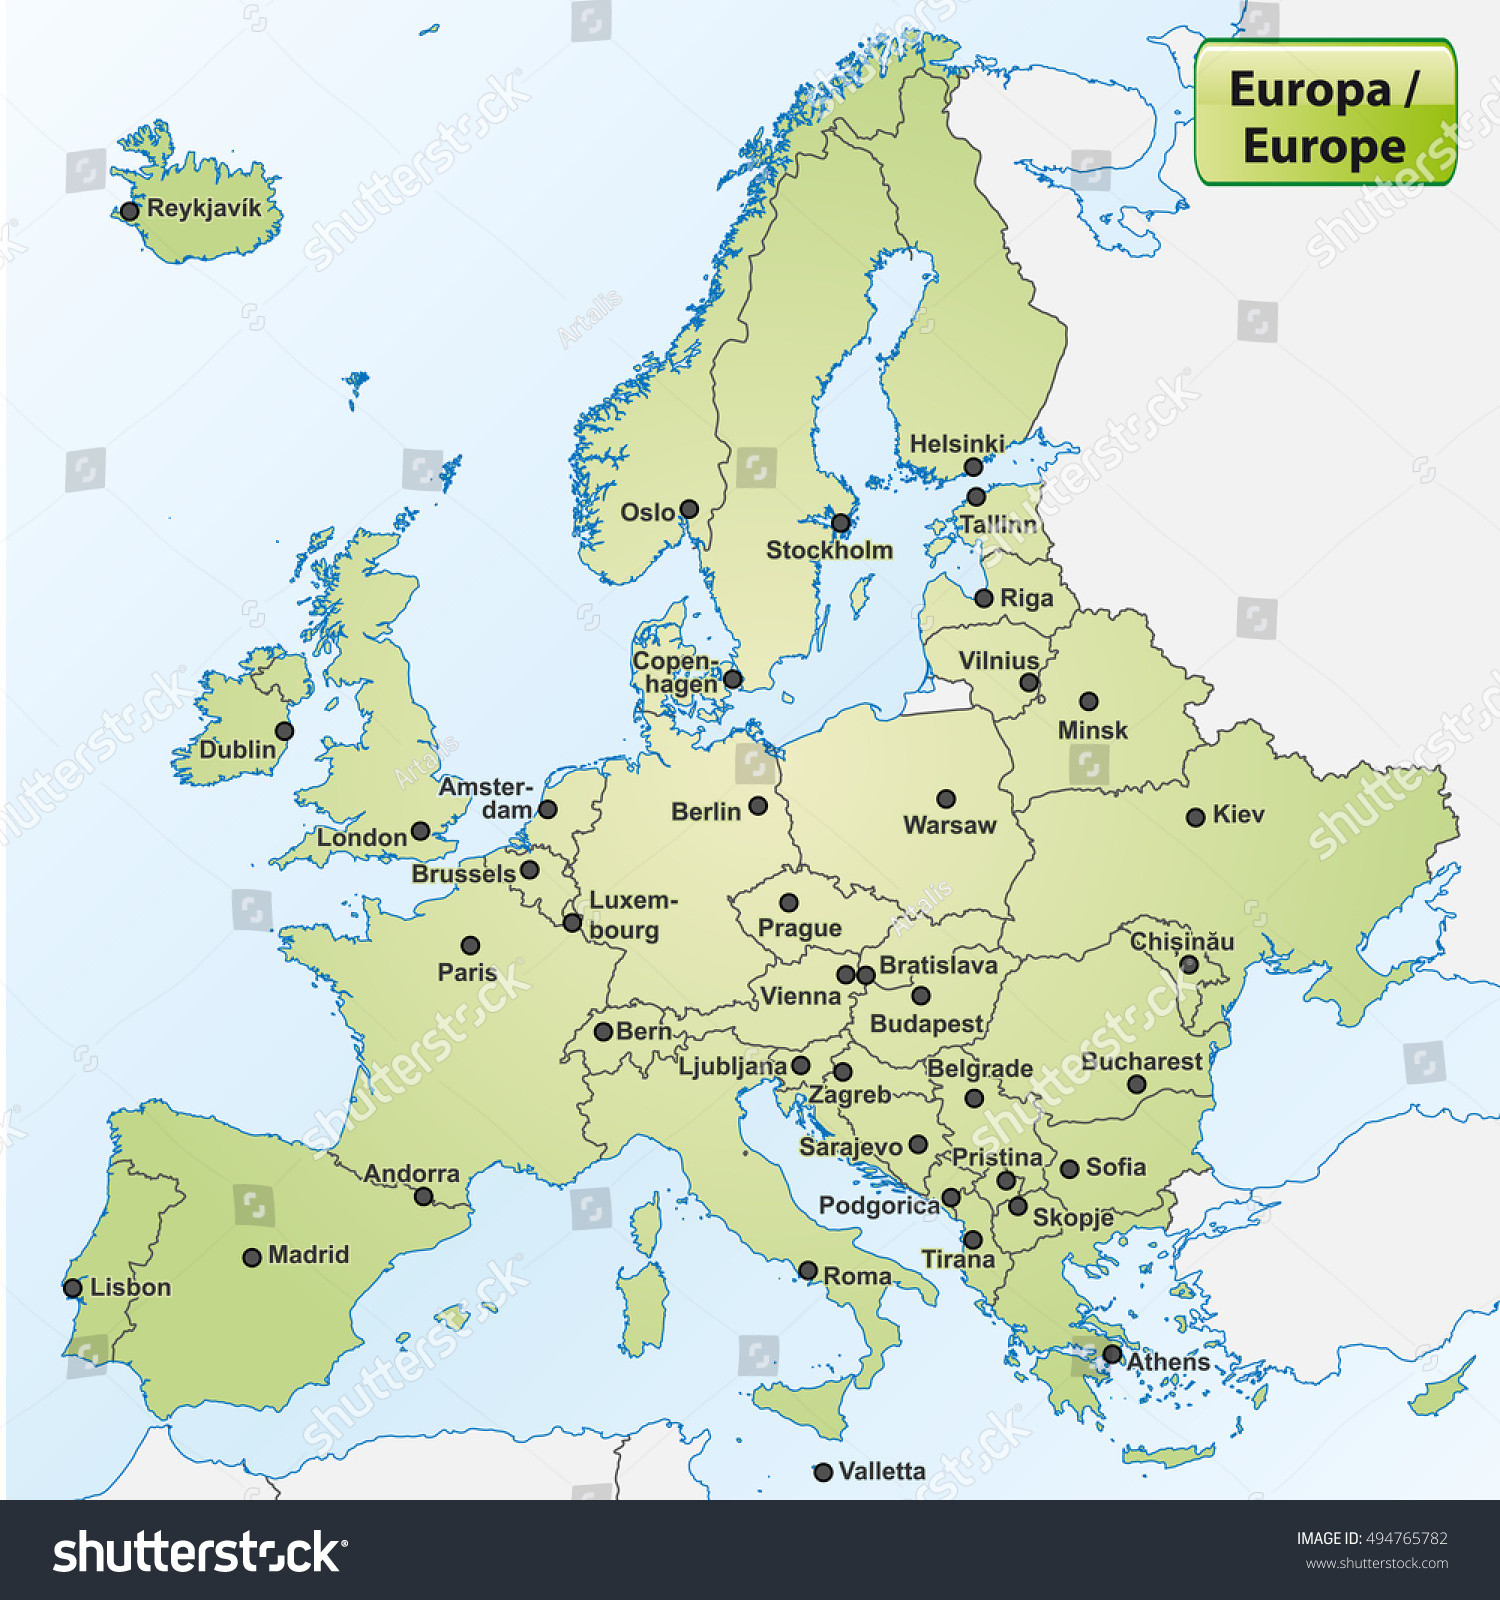 Image Vectorielle De Stock De Carte De L'europe Avec Les pour Carte De L Europe Capitales